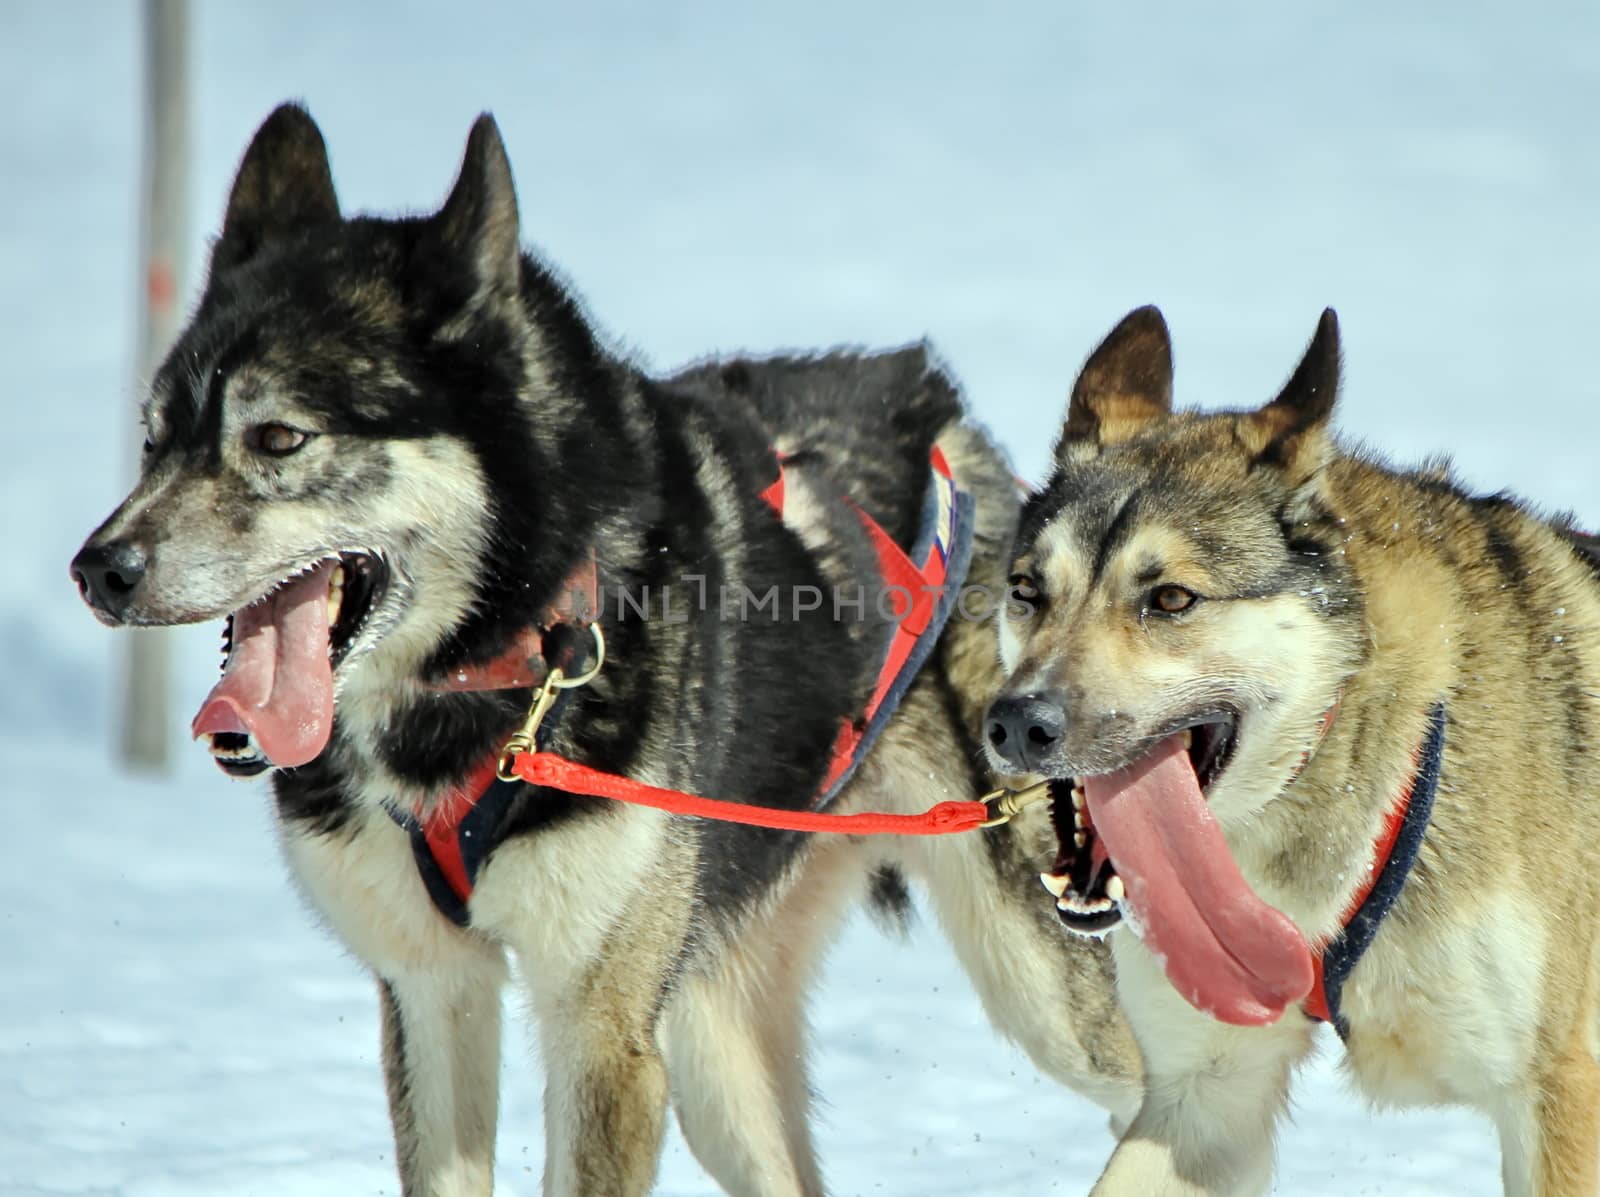 A husky sled dog team at work by Elenaphotos21